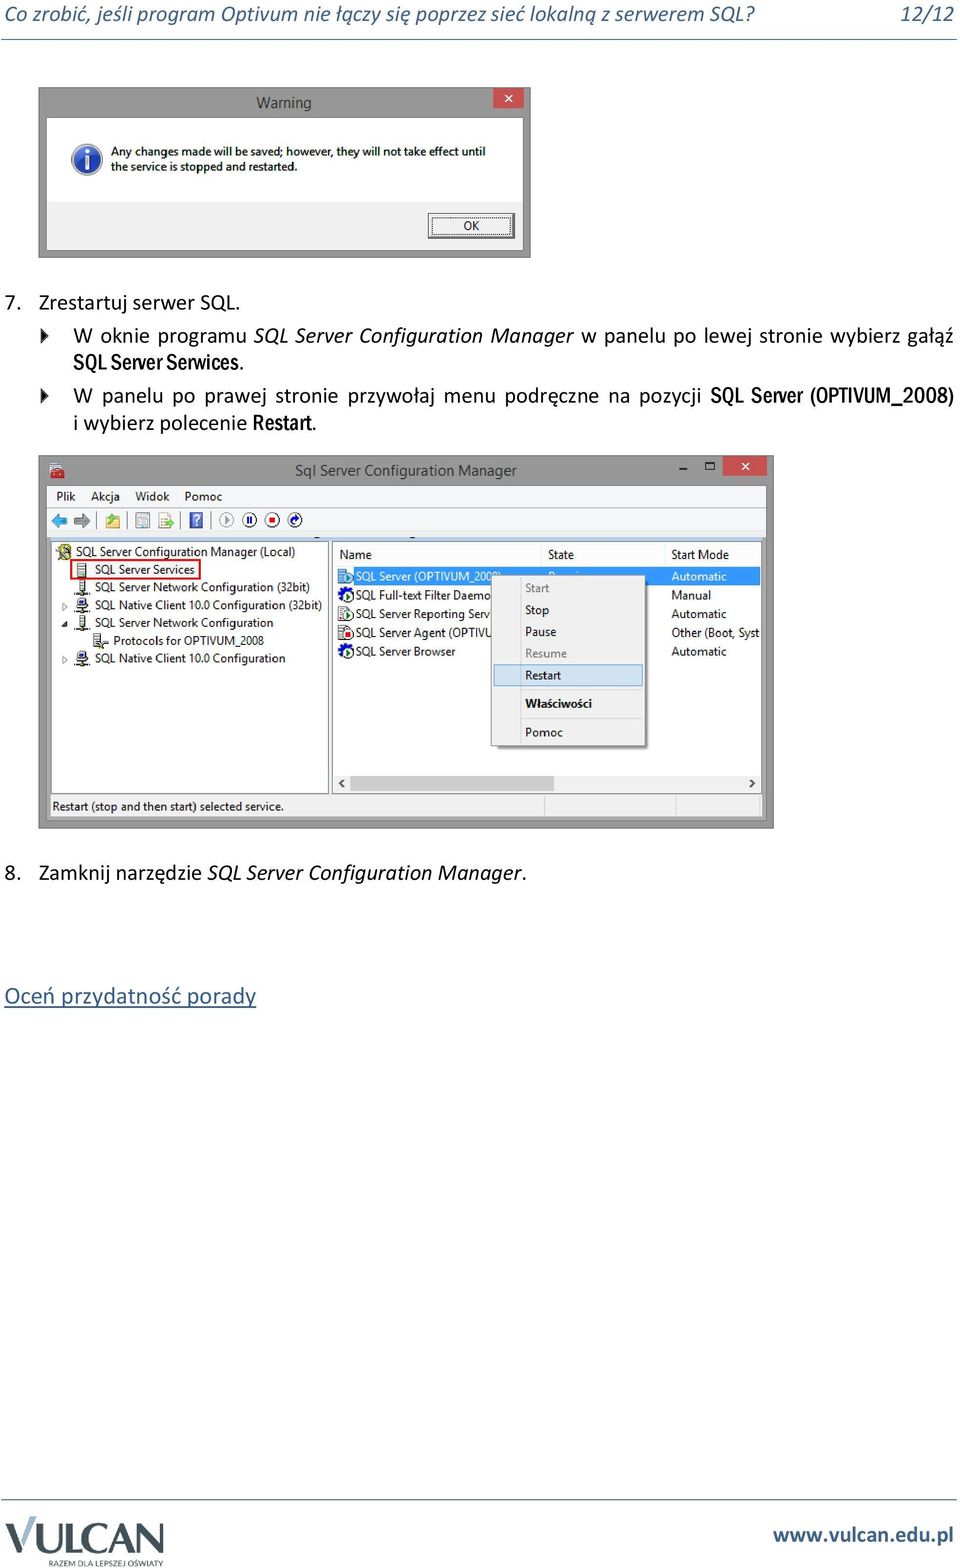 W oknie programu SQL Server Configuration Manager w panelu po lewej stronie wybierz gałąź SQL Server